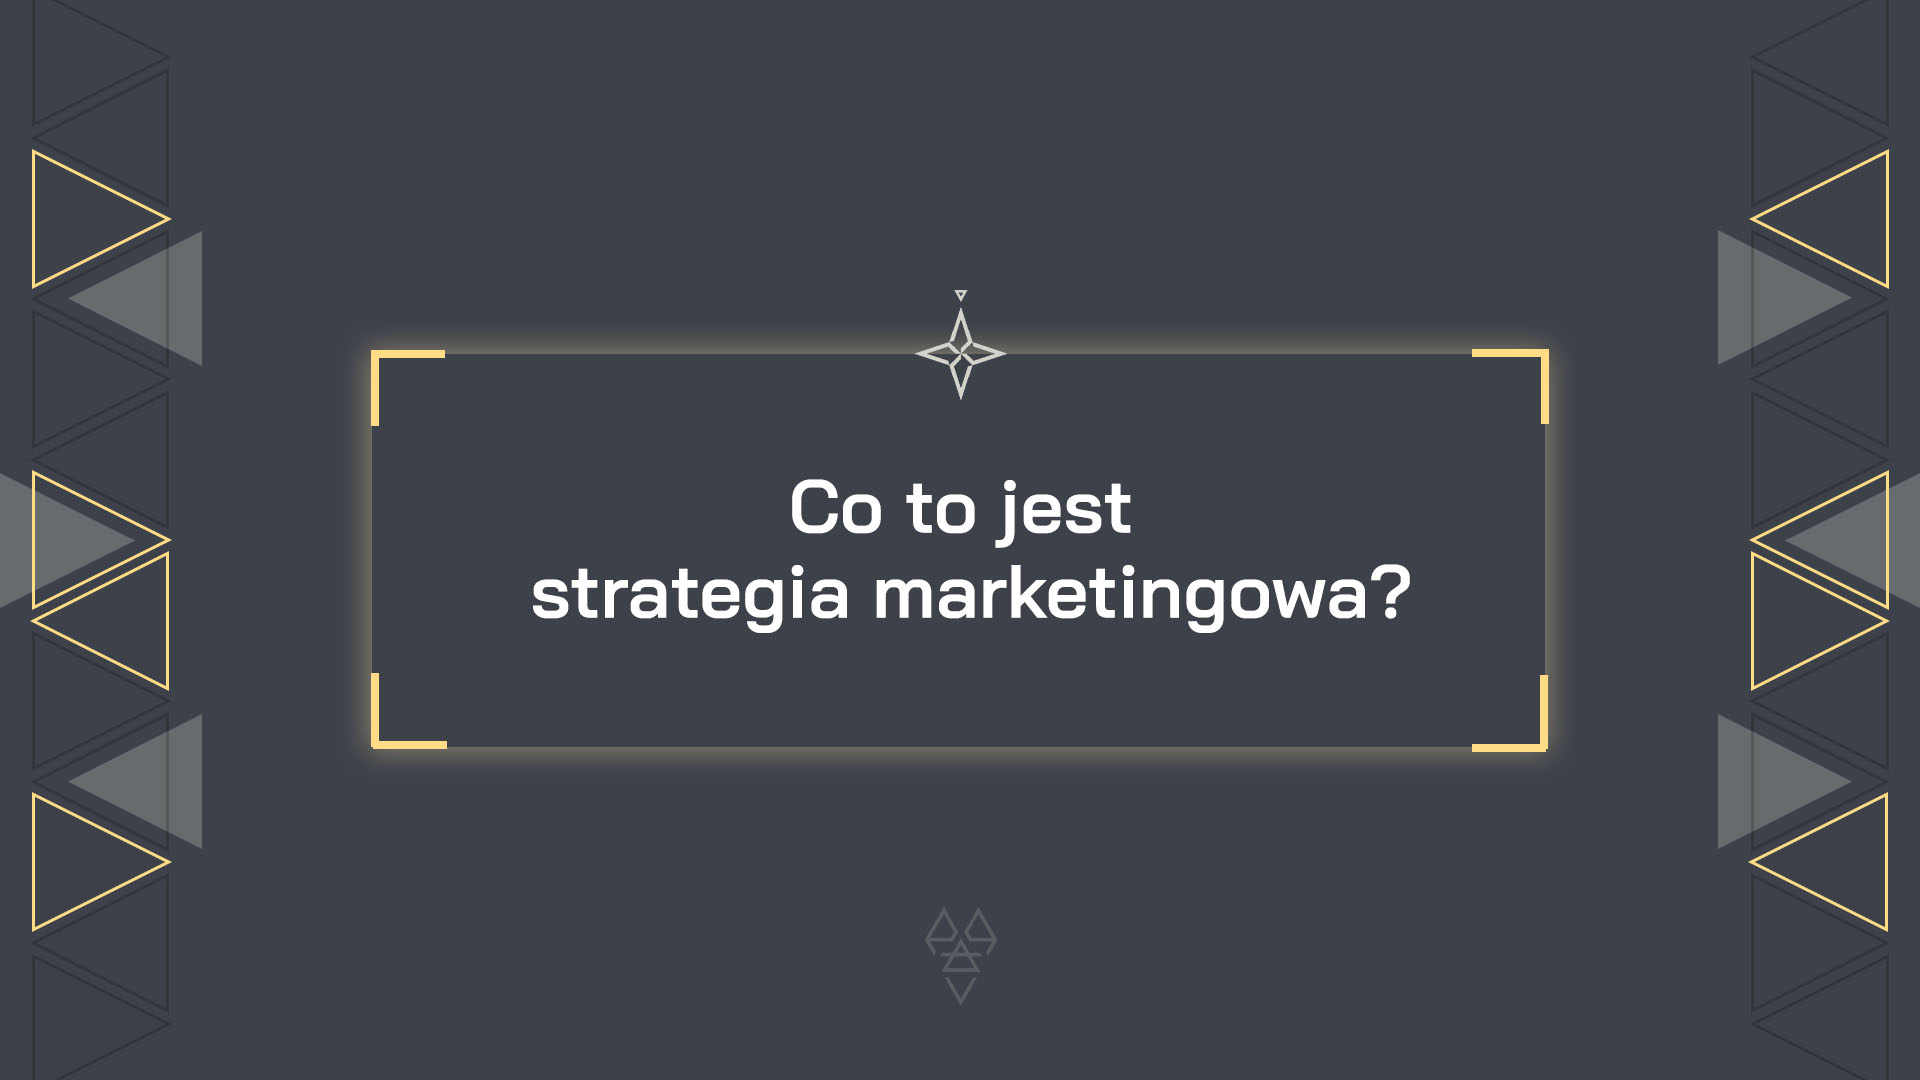 Co to jest strategia marketingowa? Matt Kosmaczewski art